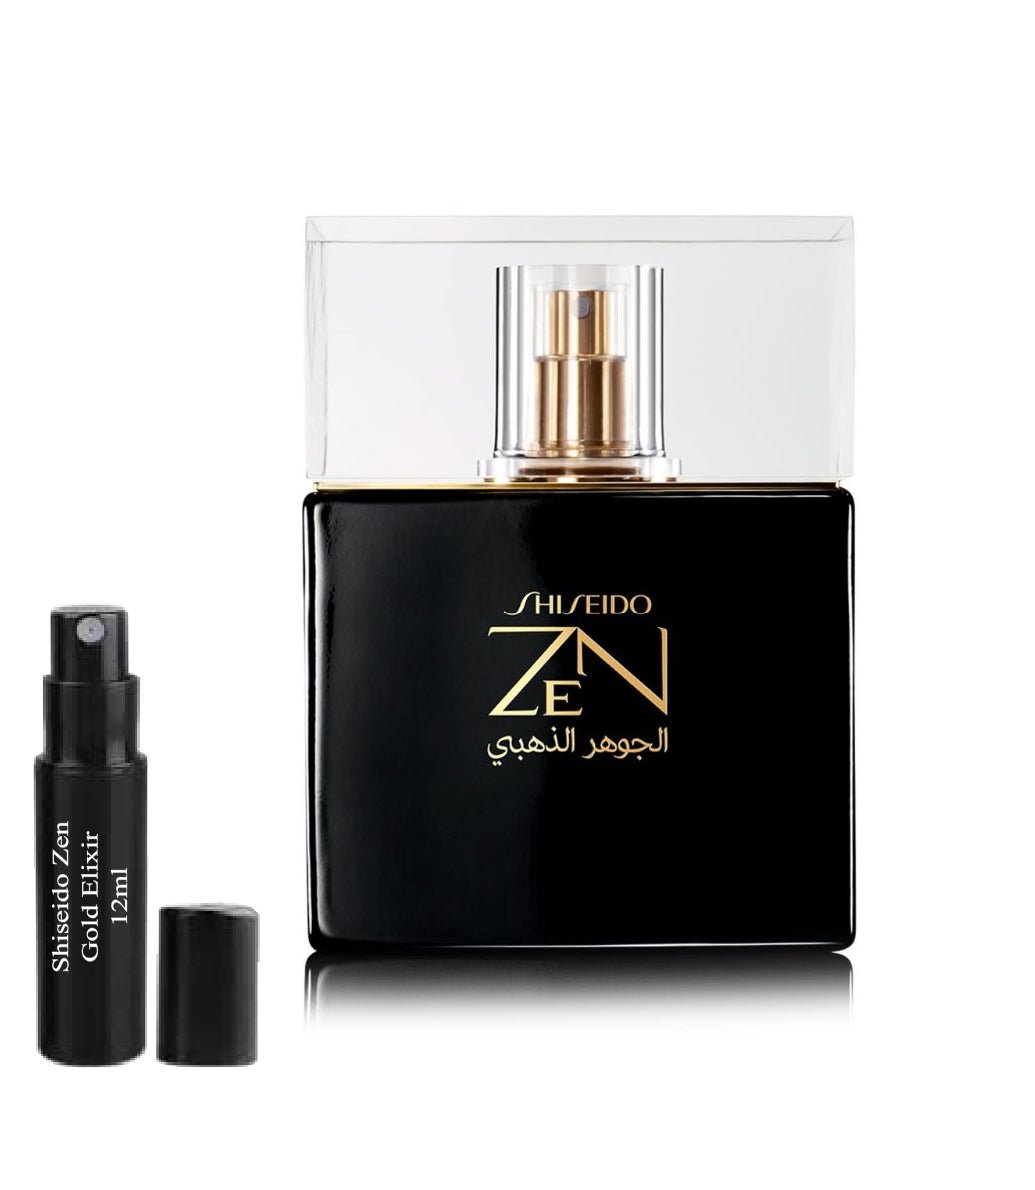 Shiseido Zen Gold Elixir 12ml 0.41 fl. o.z. vzorek parfému,  Shiseido Zen Gold Elixir 12ml 0.41 fl. o.z. δείγμα αρώματος,  Shiseido Zen Gold Elixir 12ml 0.41 fl. o.z. próbka perfum,  Shiseido Zen Gold Elixir 12ml 0.41 fl. o.z. образец духов,  Shiseido Zen Gold Elixir 12ml 0.41 fl. o.z. vzorec parfuma